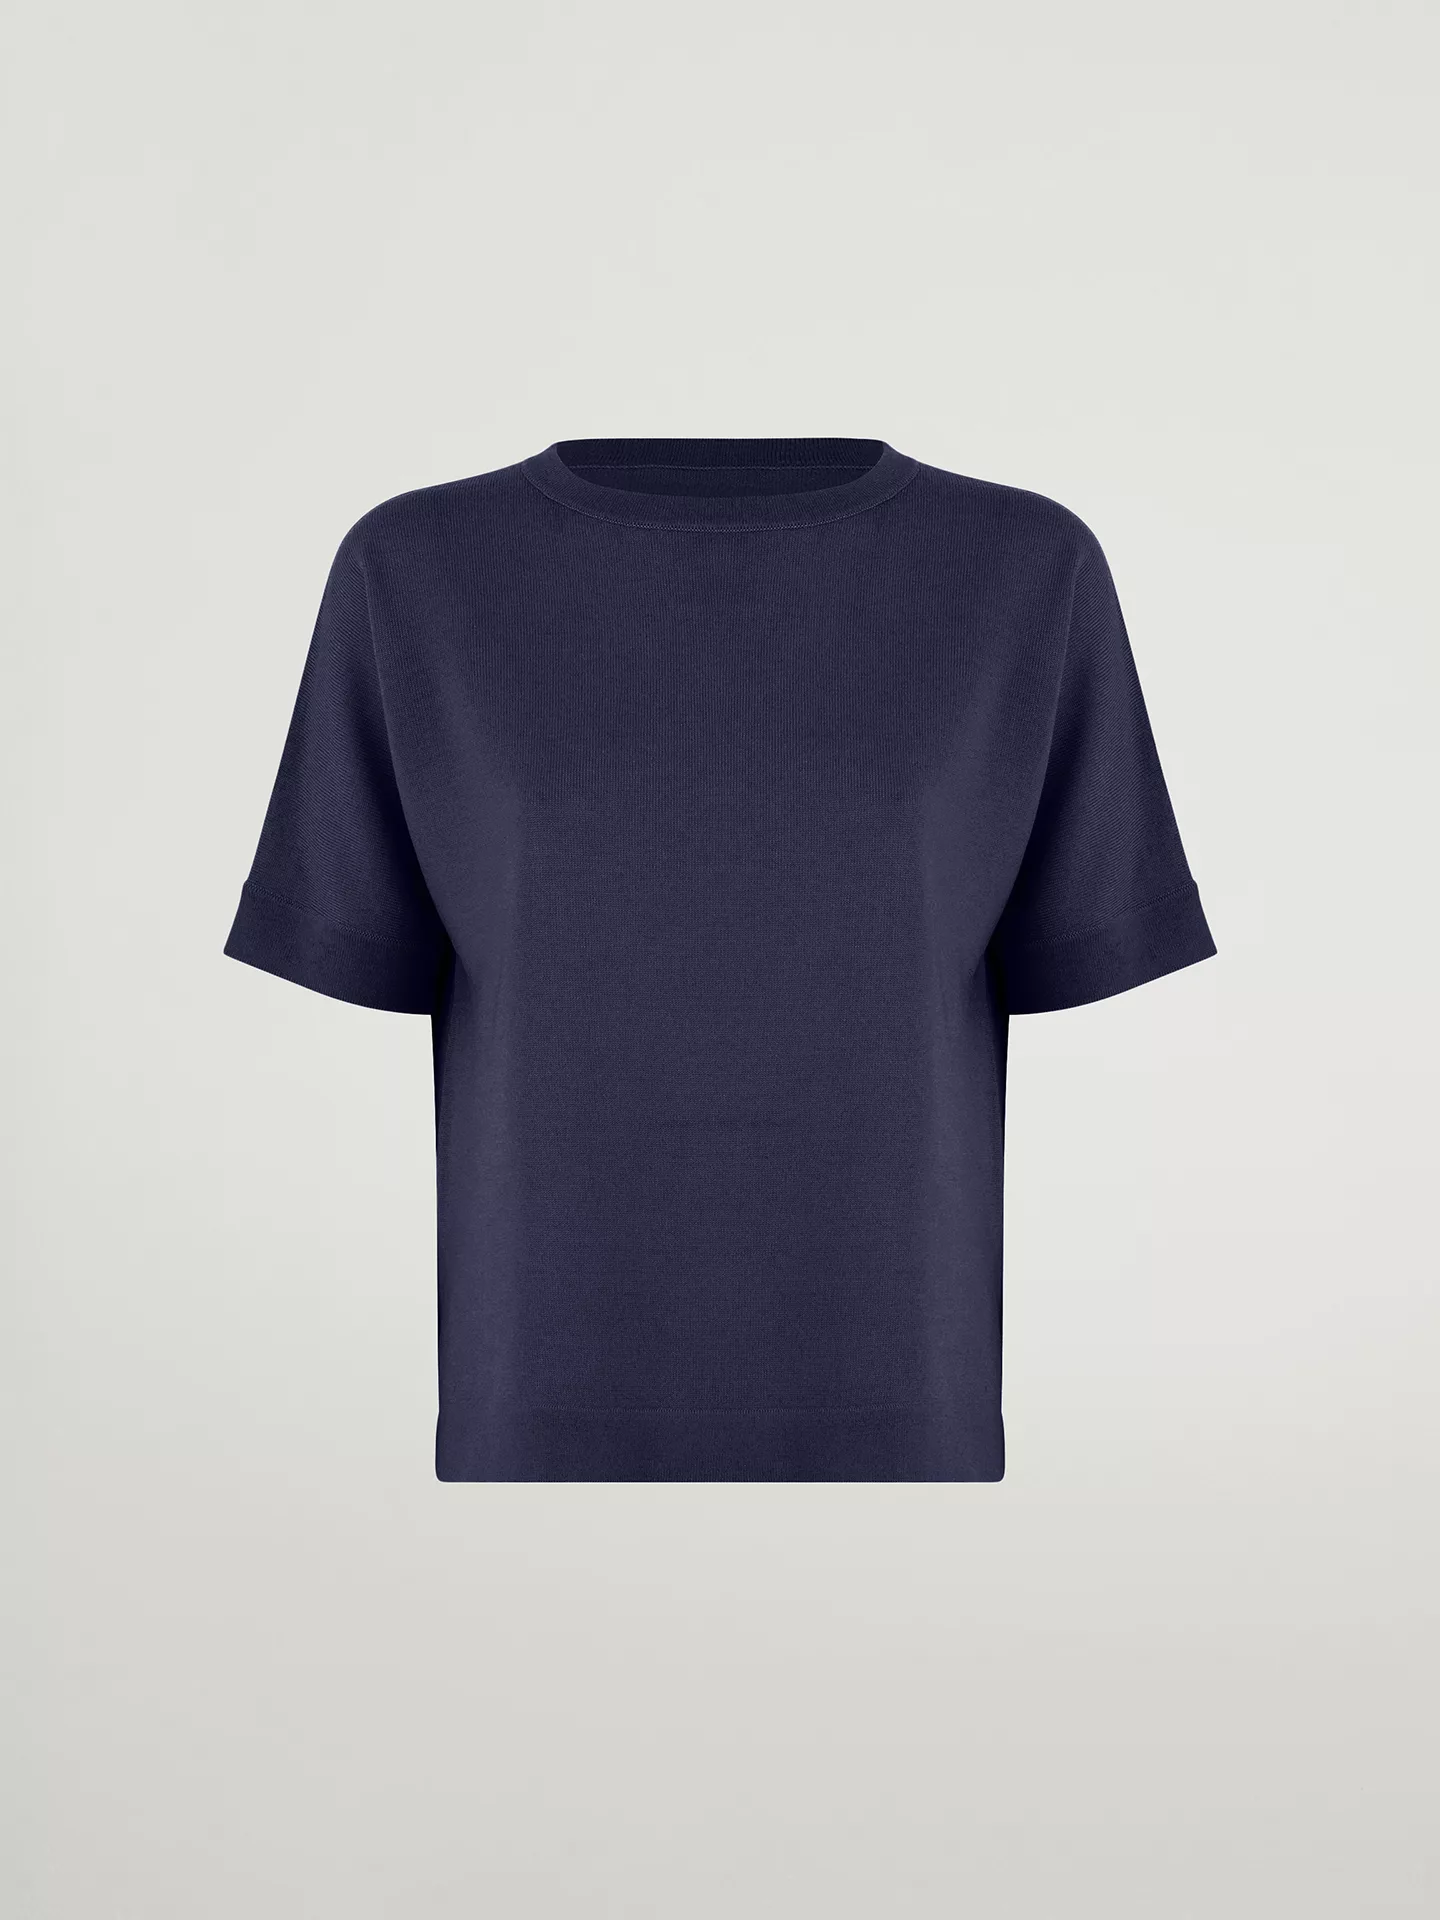 Wolford - Merino Blend Top Short Sleeves, Frau, saphire blue, Größe: M günstig online kaufen